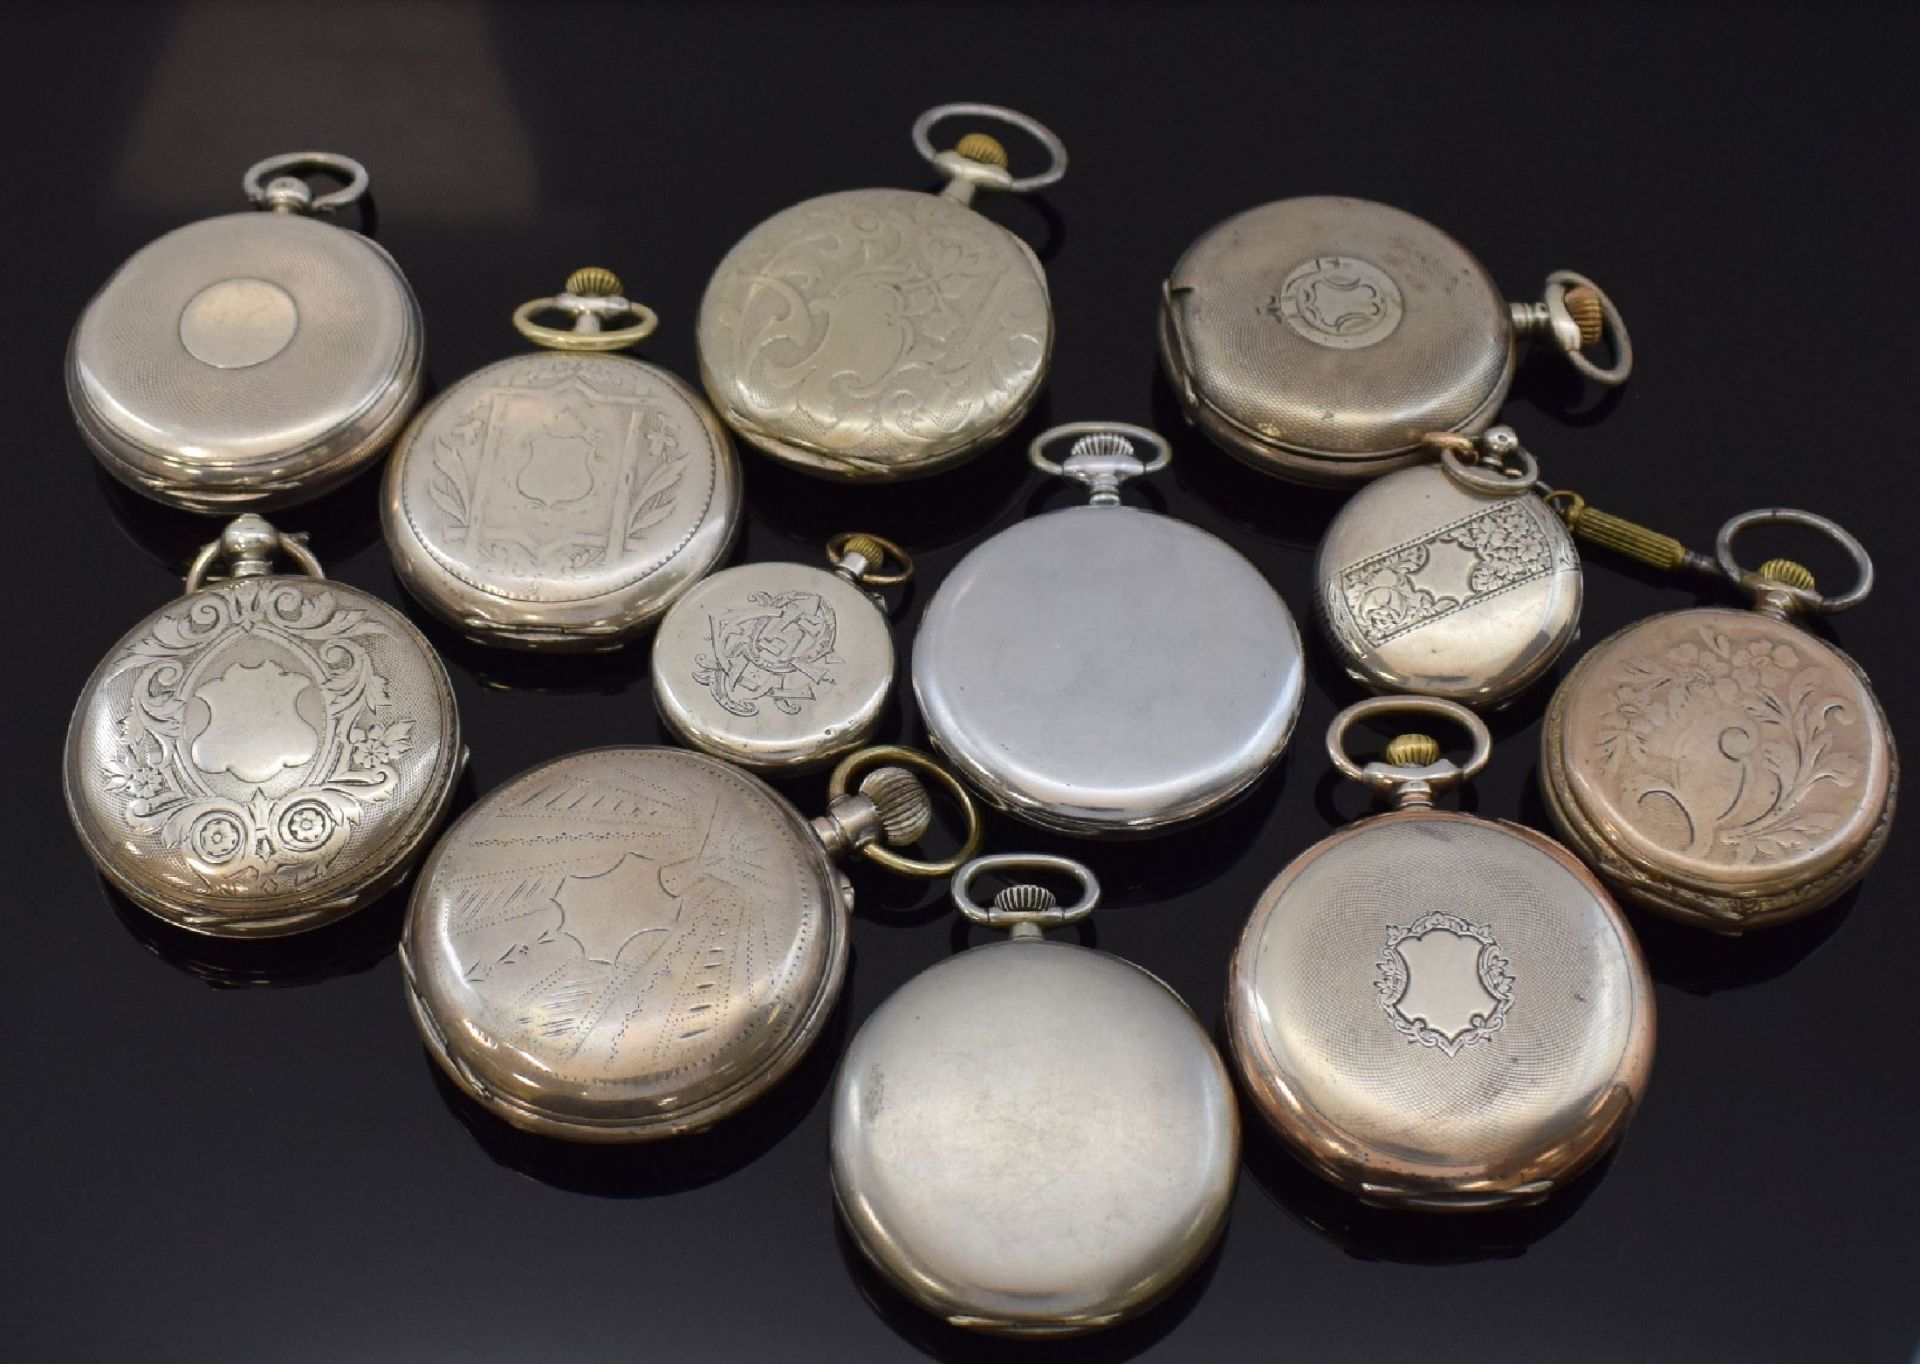 12 Taschenuhren darunter Zenith, Movado, Hebdomas, H.Moser - Bild 2 aus 3